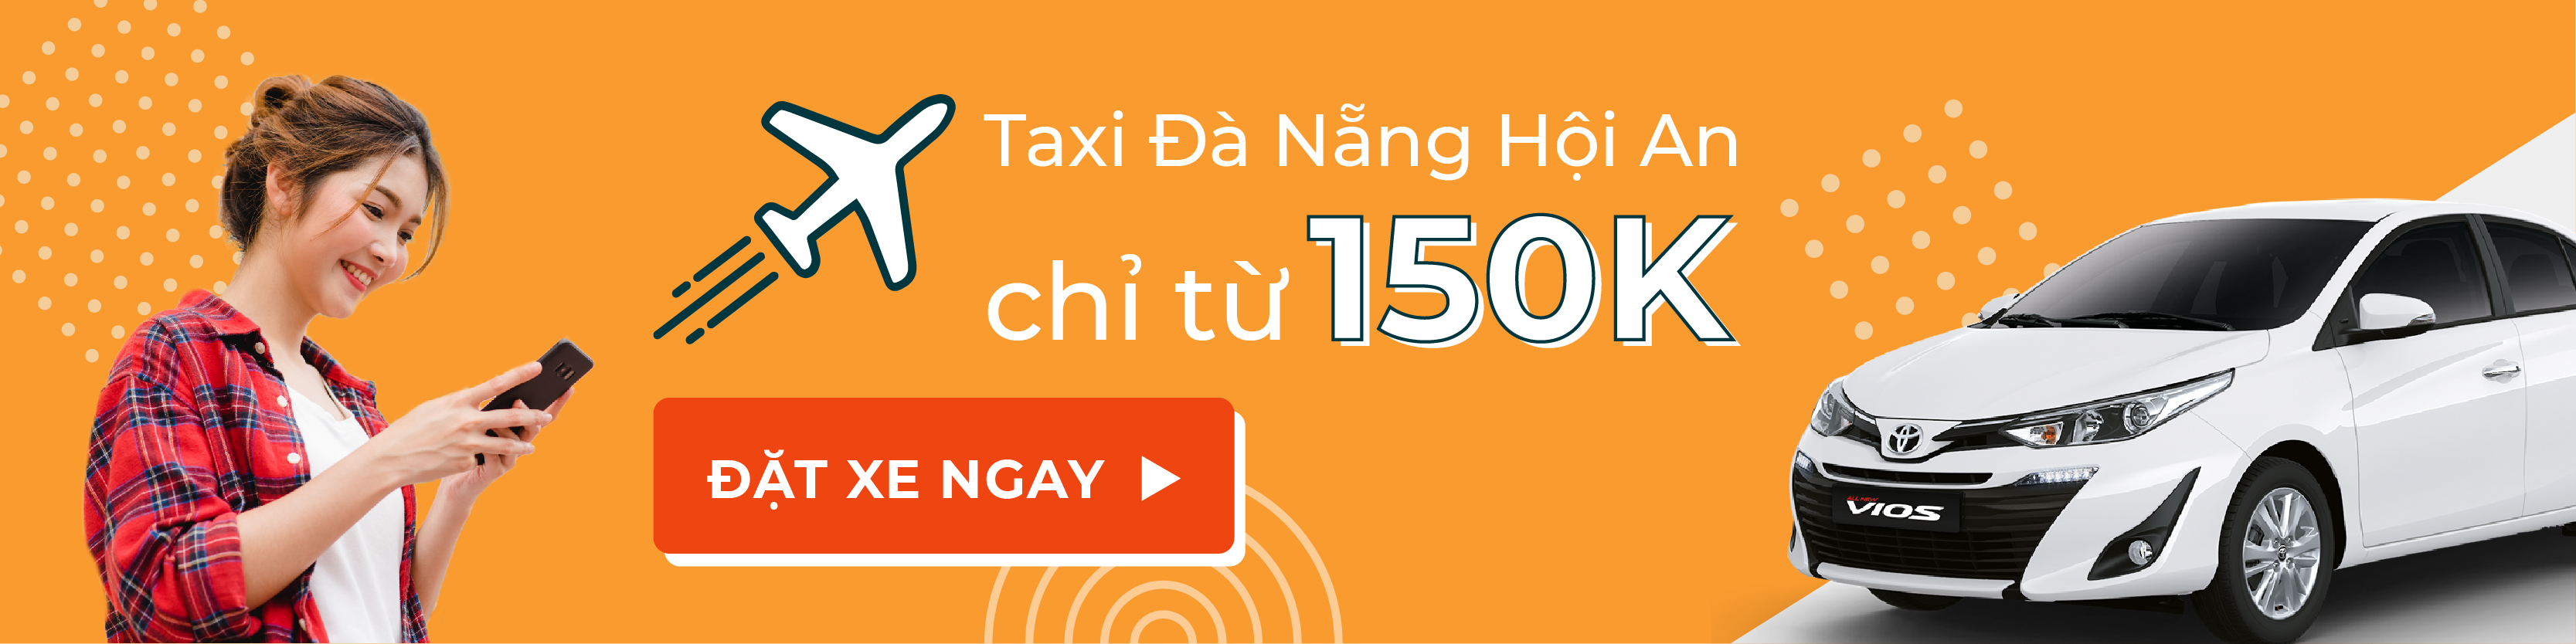 taxi đà nẵng hội an 150K